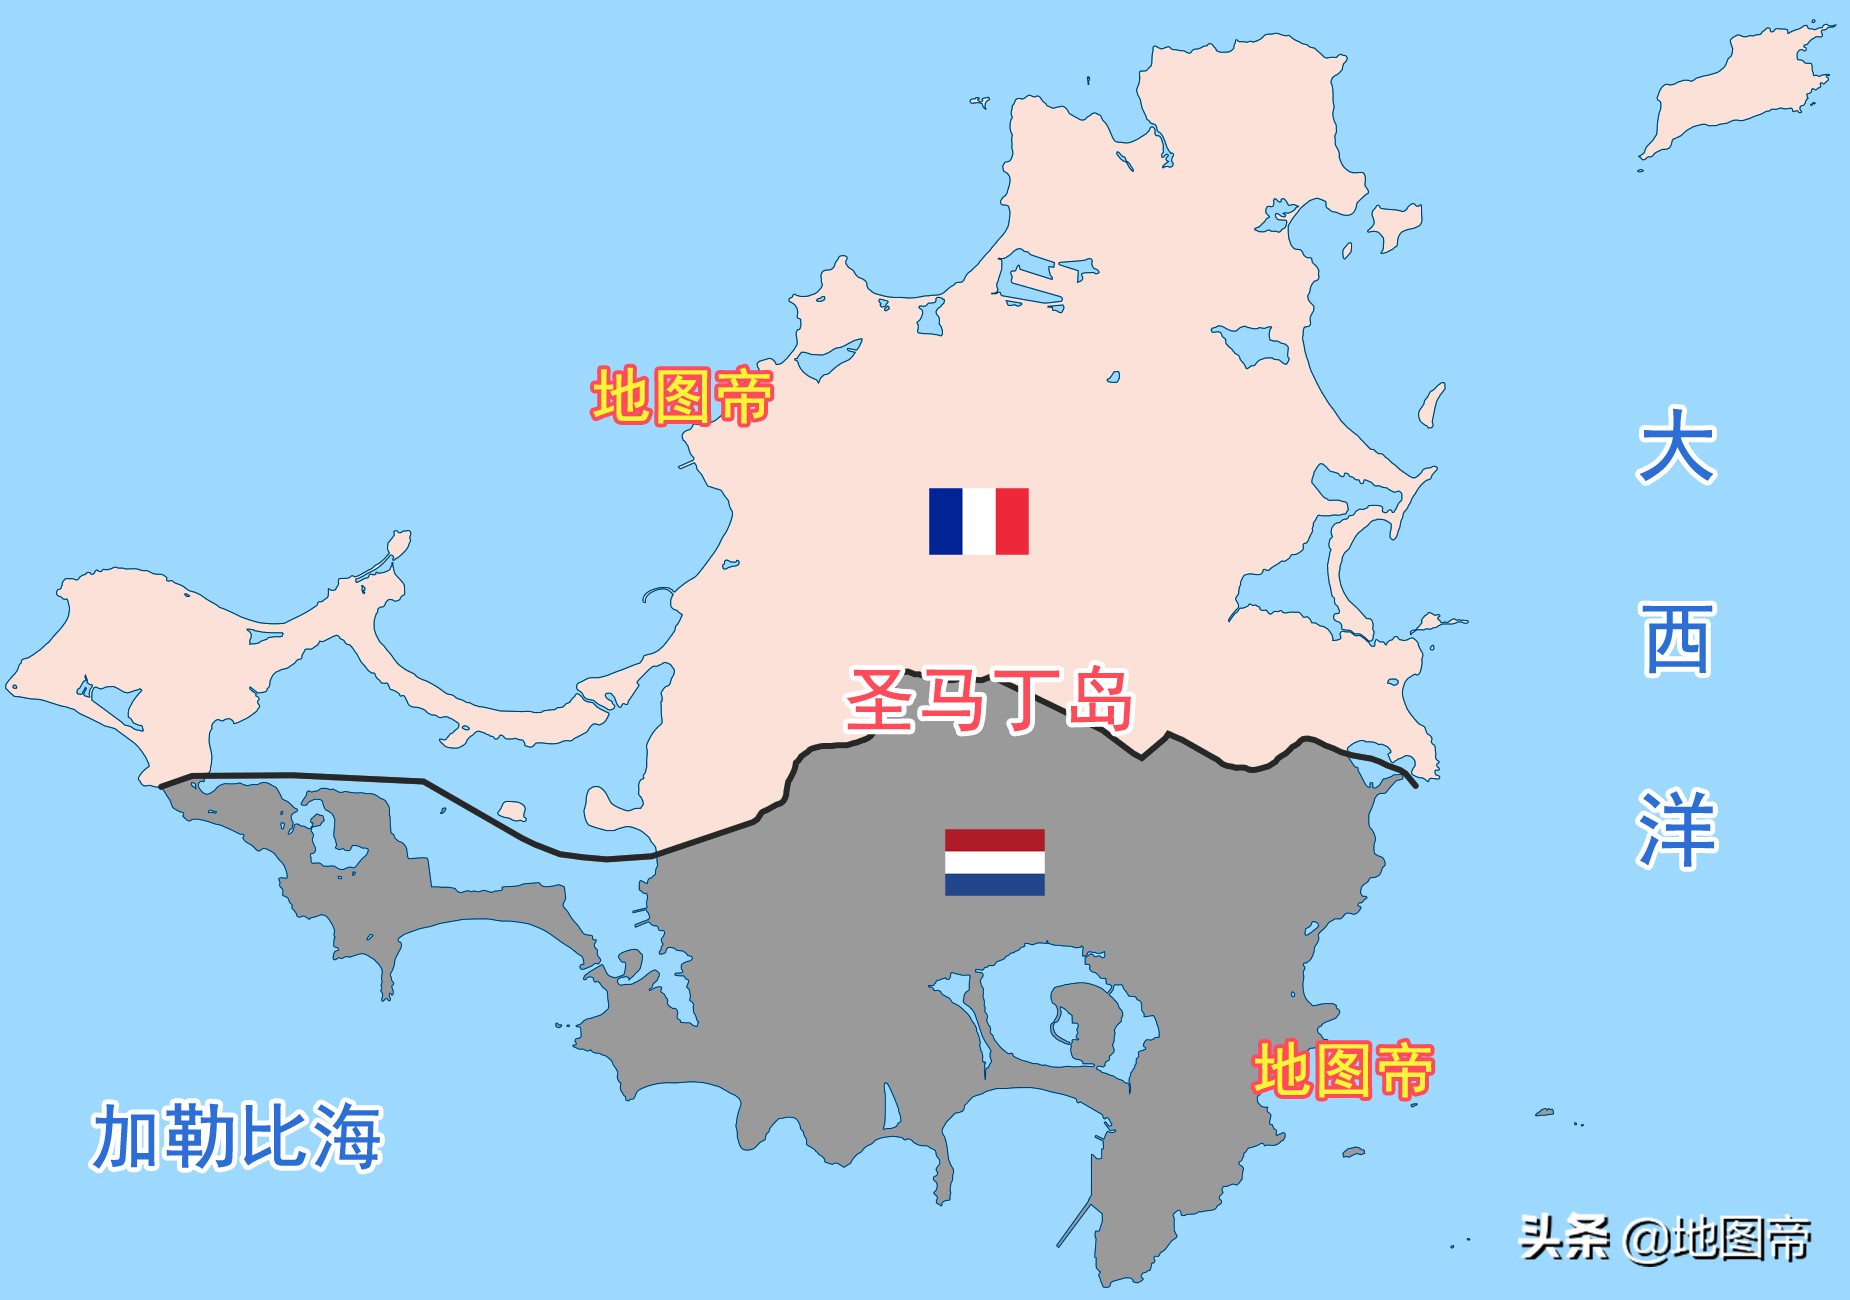 法国与荷兰挤在一个小岛上，为何修两个机场？